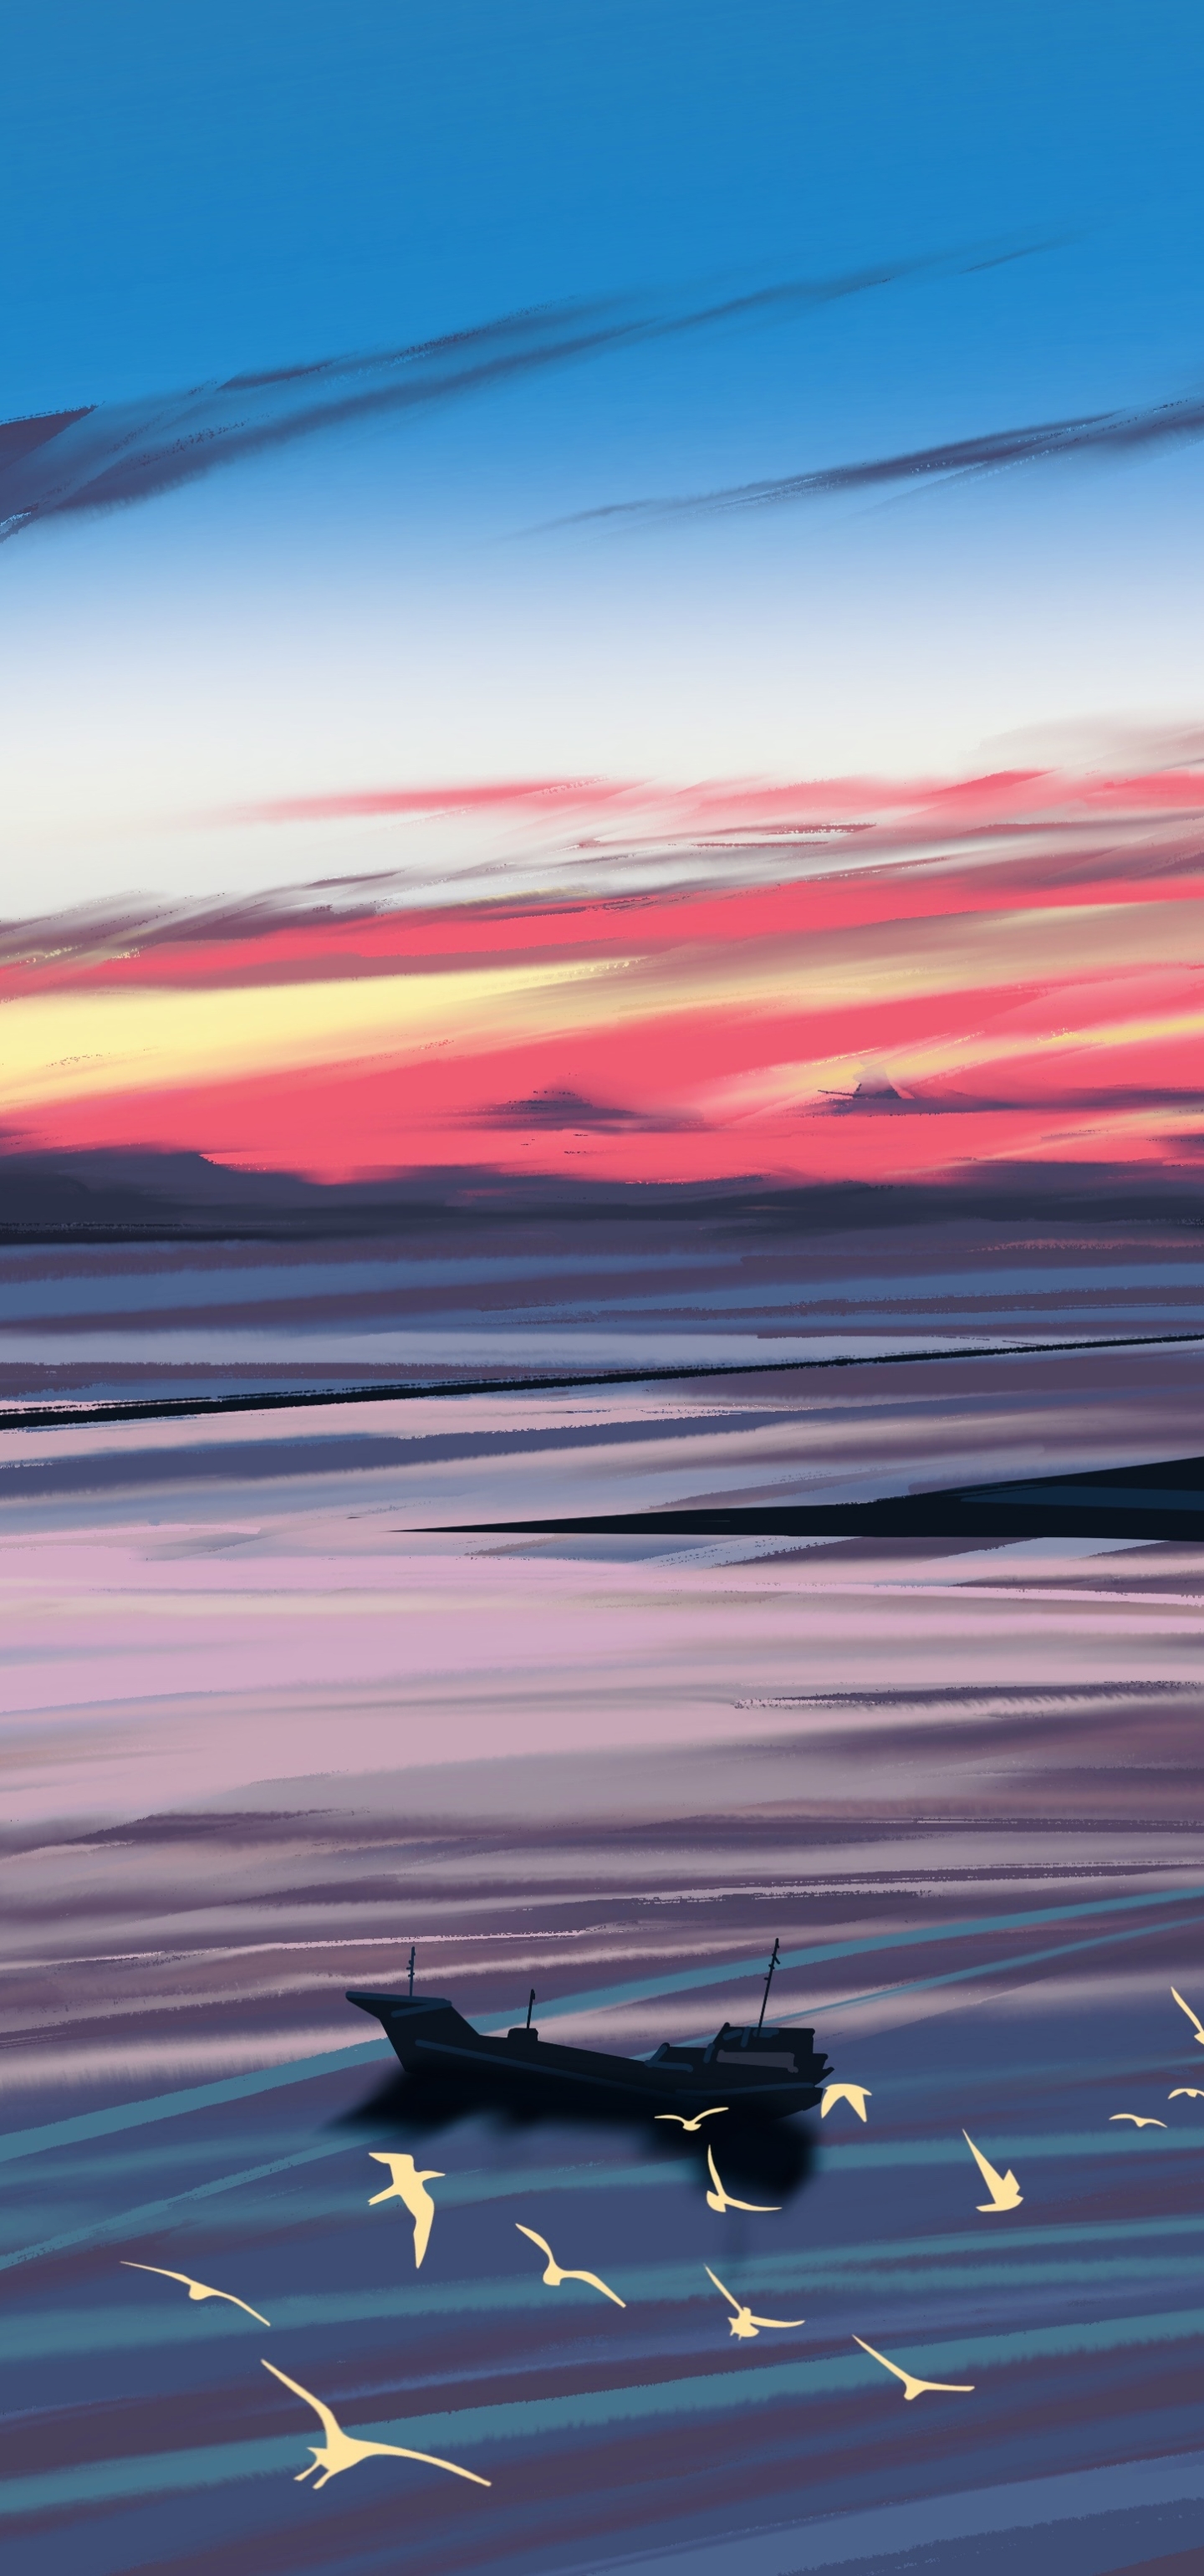 Download mobile wallpaper Landscape, Sunset, Artistic for free.